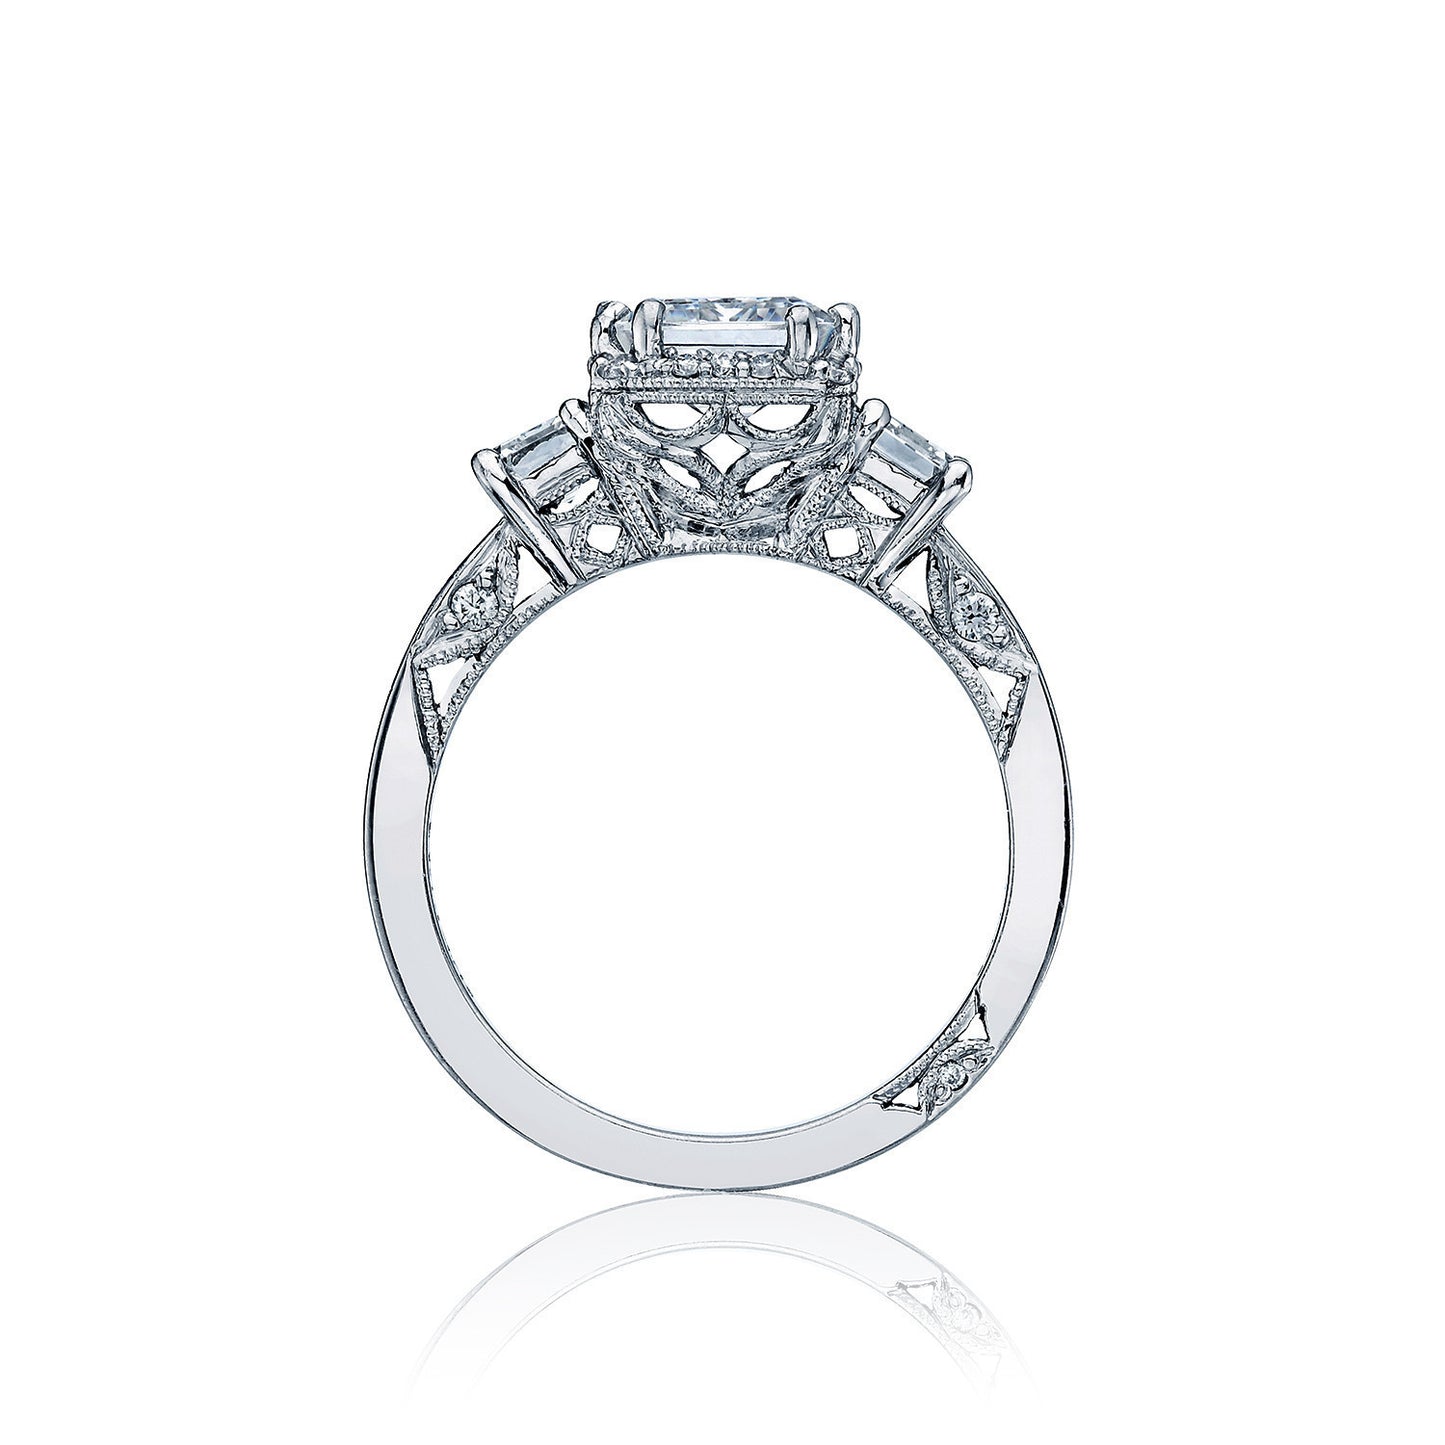 2621ECLG,2621ECLG ring,2621ECLG Metal,2621ECLG diamond ring,tacori 2621ECLG